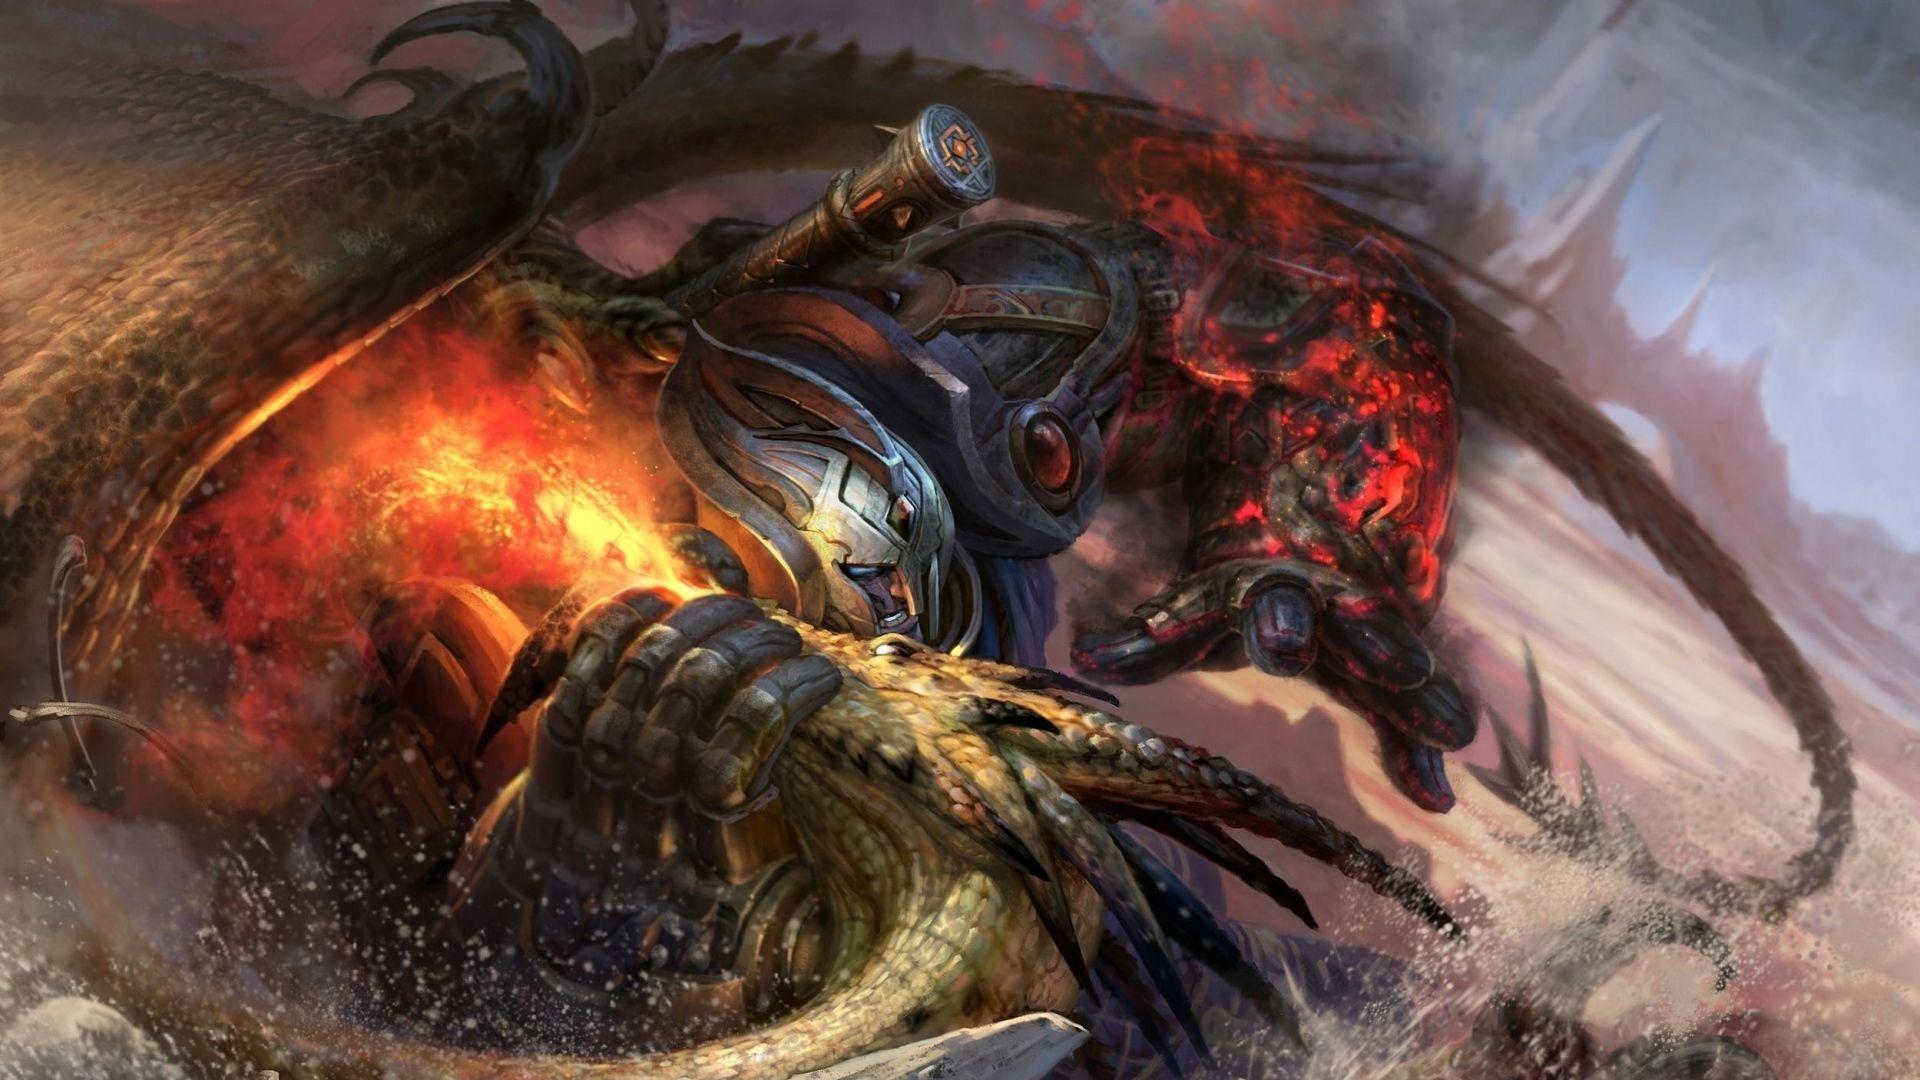 flame dragon 2 legend of golden castle download